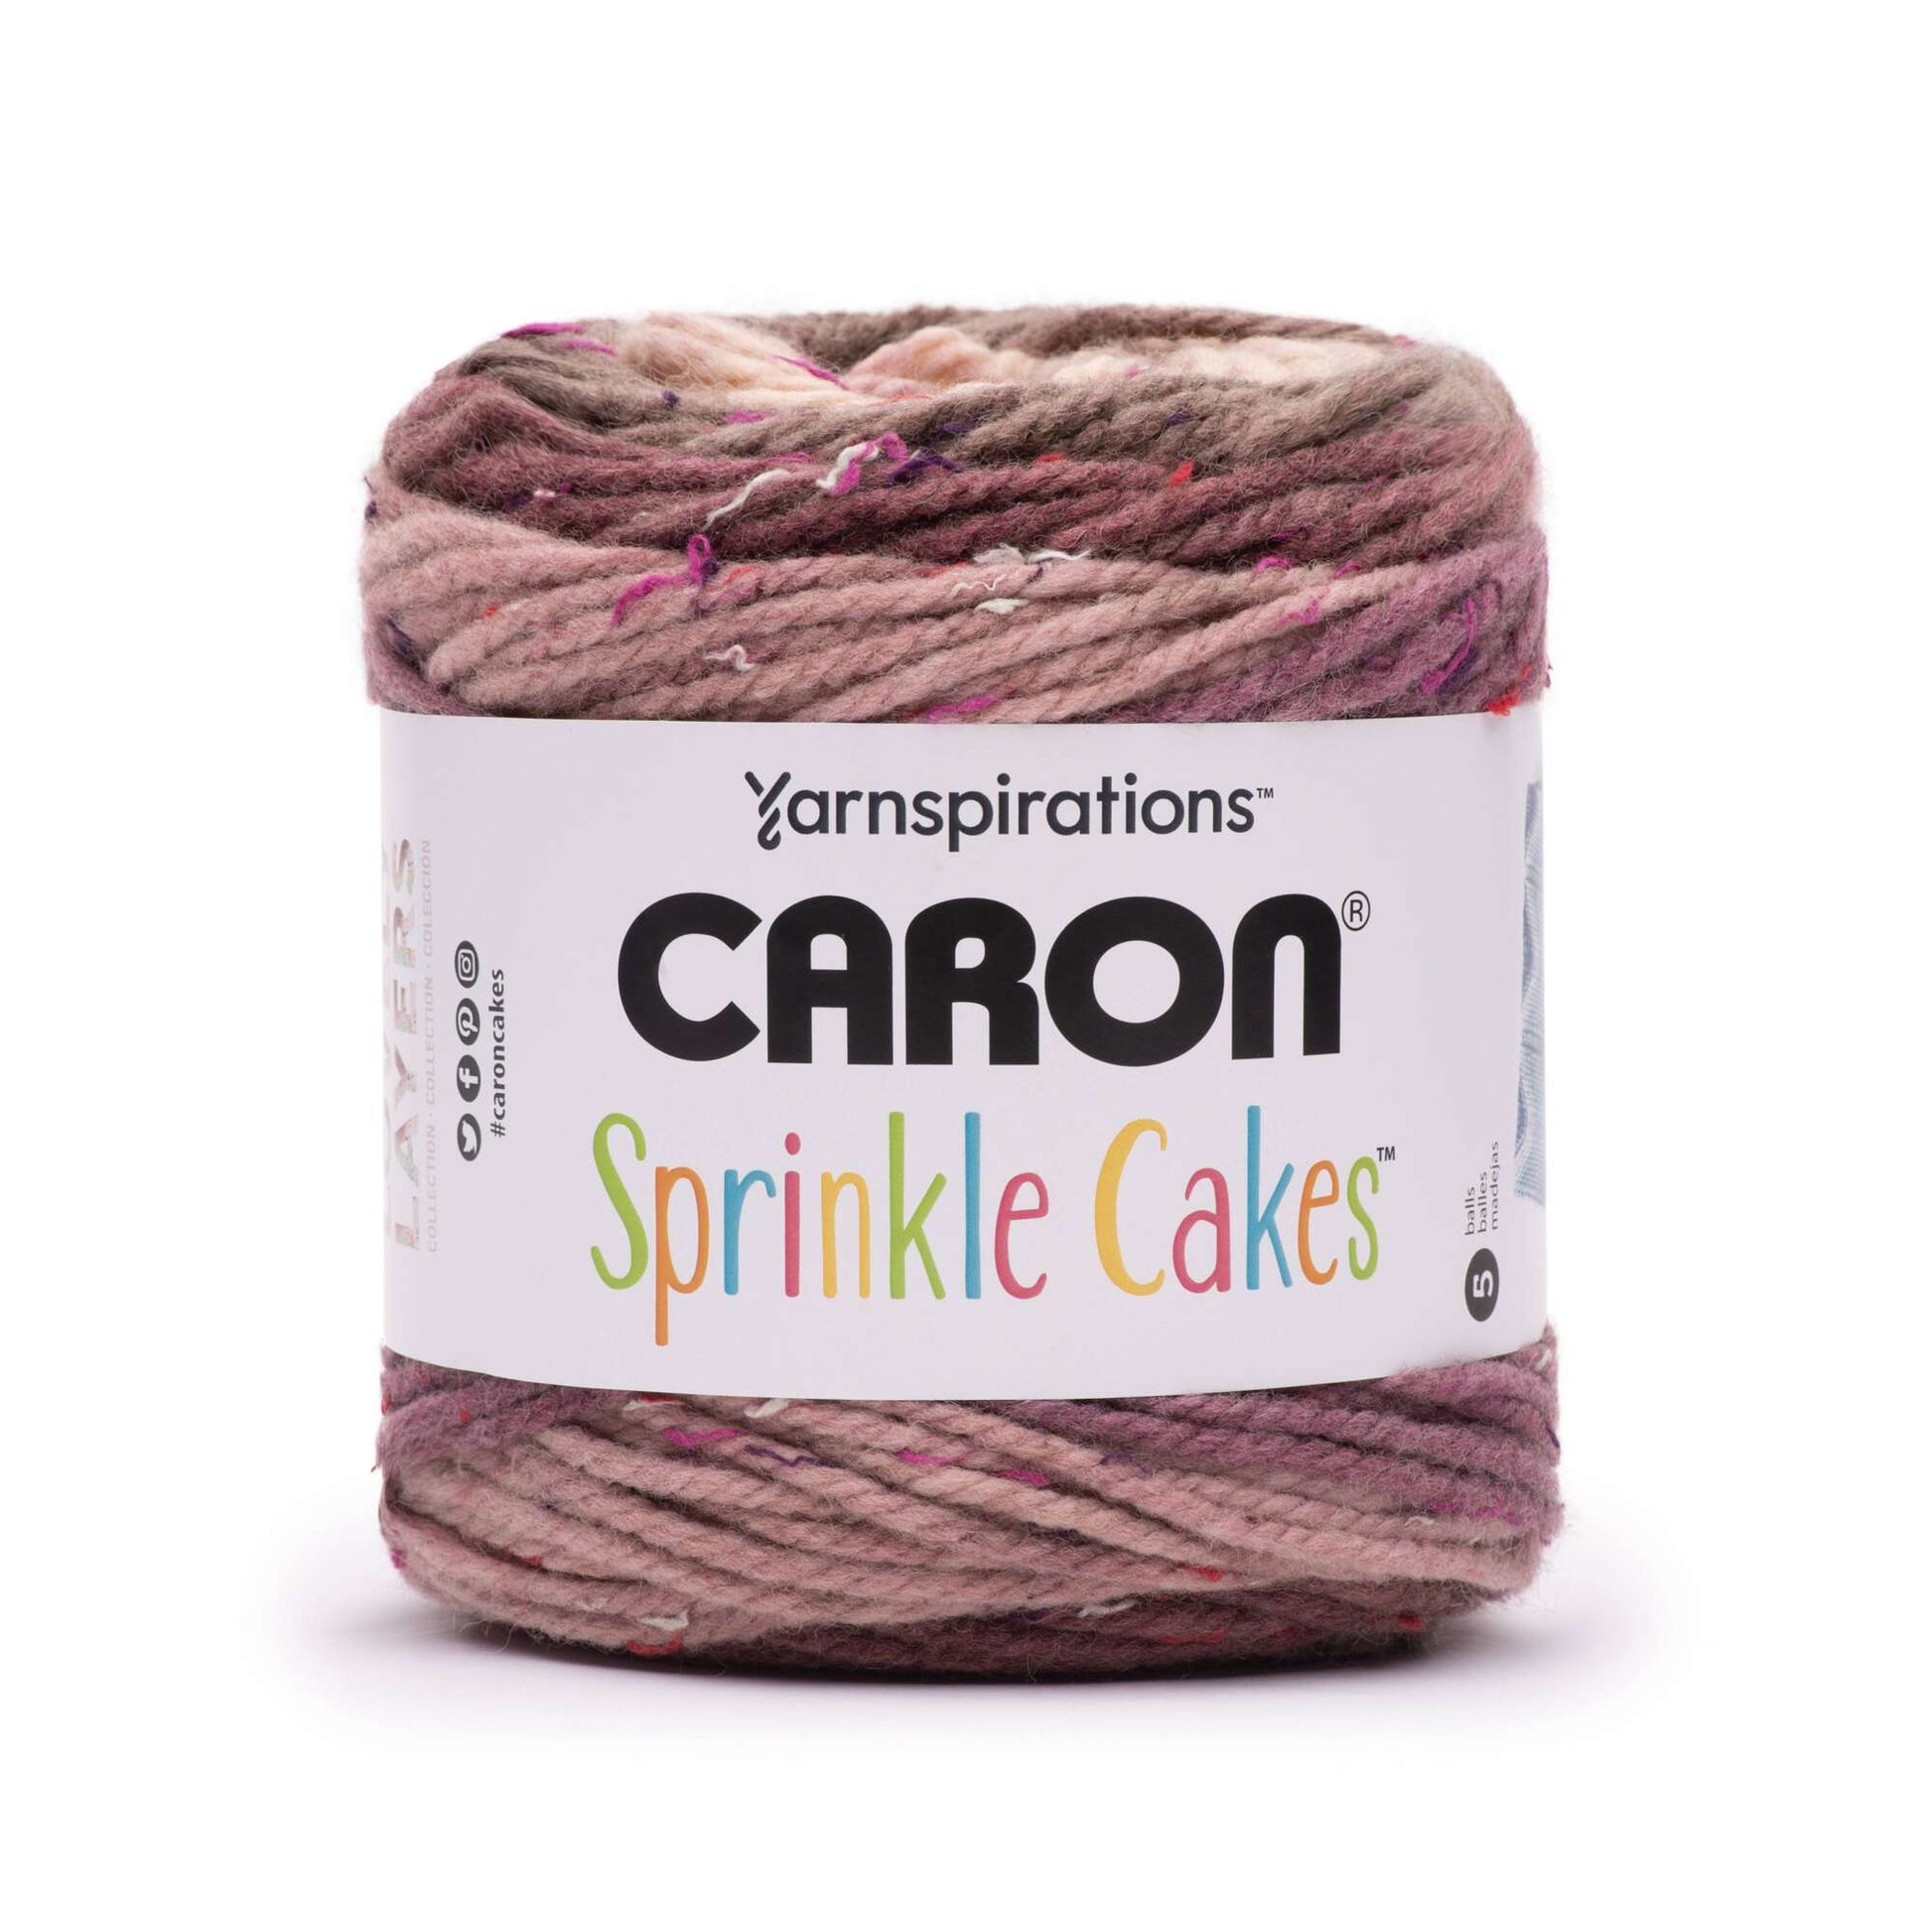 Caron Sprinkle Cakes Yarn